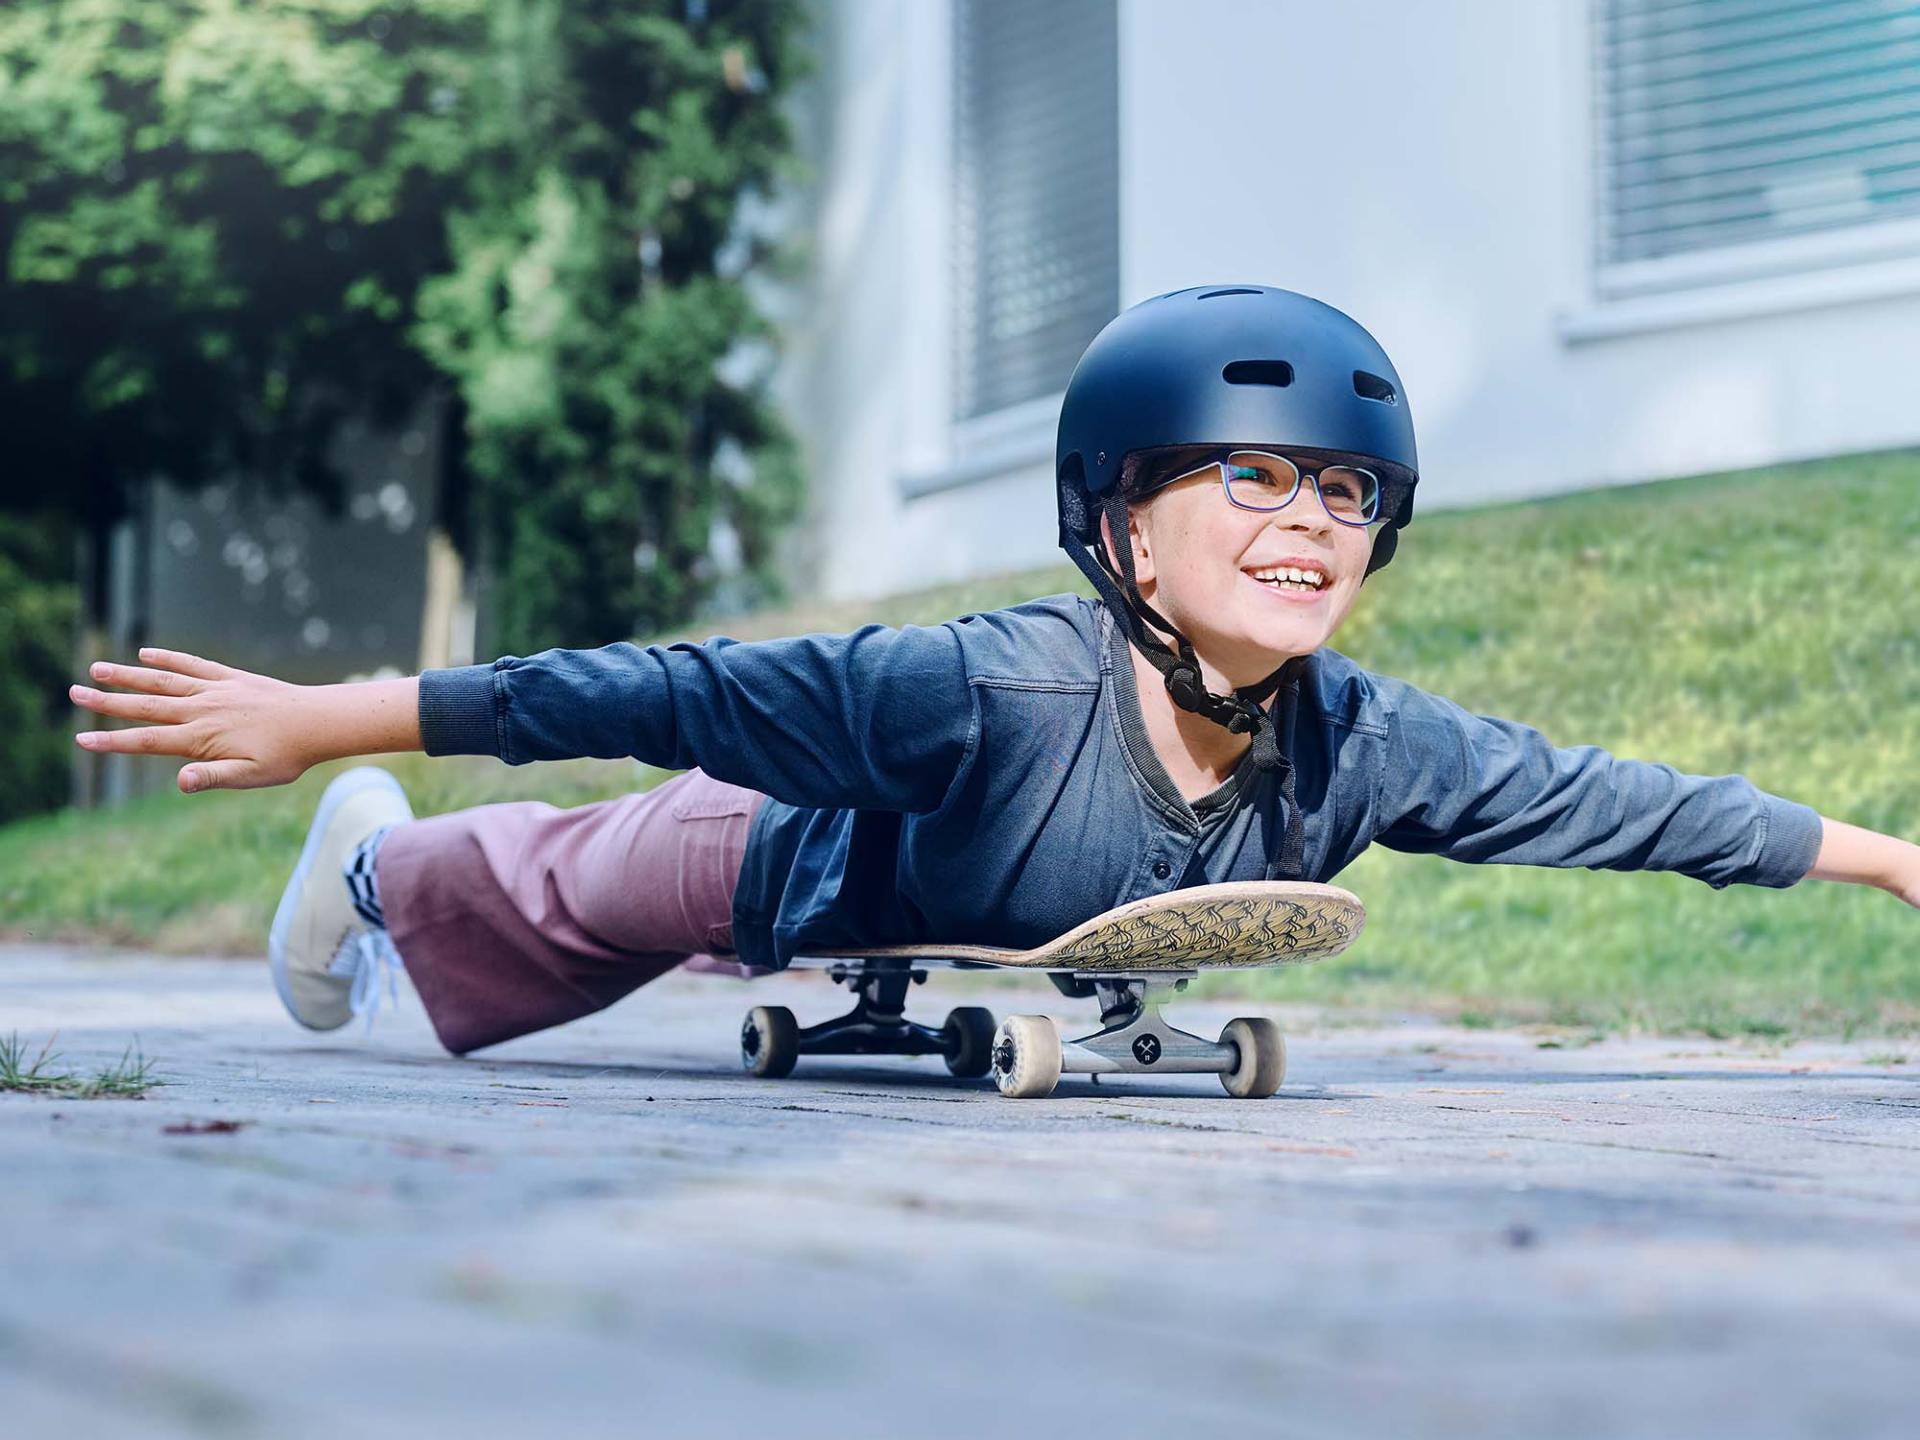 Ein Mädchen mit Helm und Brille rollt auf einem Skateboard liegend die Straße entlang und streckt die Arme aus.